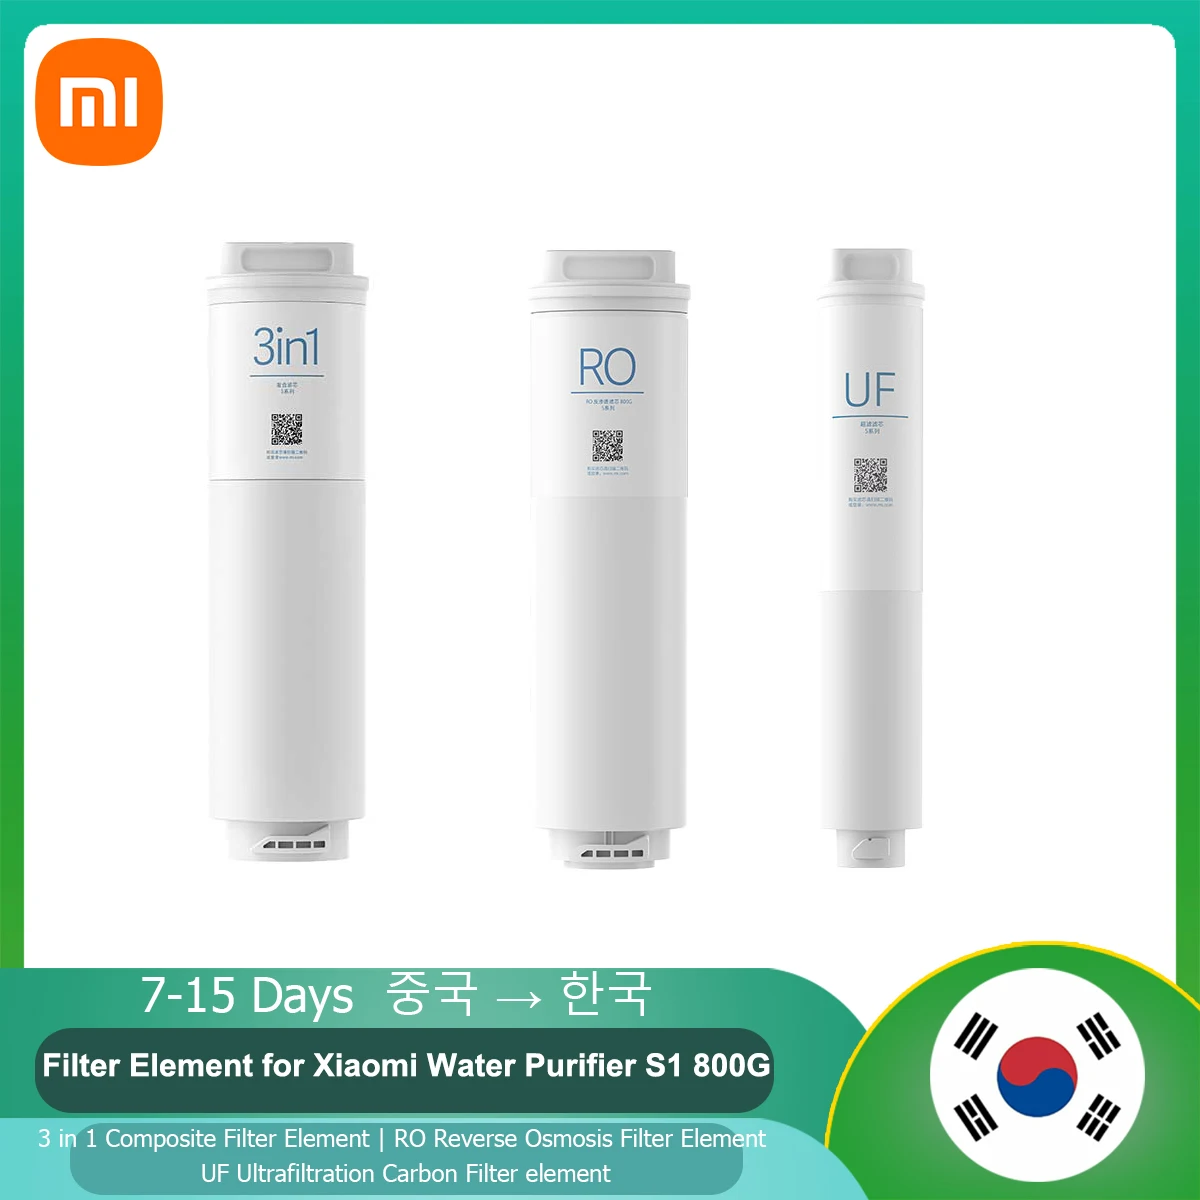 

Фильтр-элемент Xiaomi S1 800G для очистки воды 3 в 1, композитный элемент фильтра обратного осмоса, фильтр-элемент UF ultrafiltratio